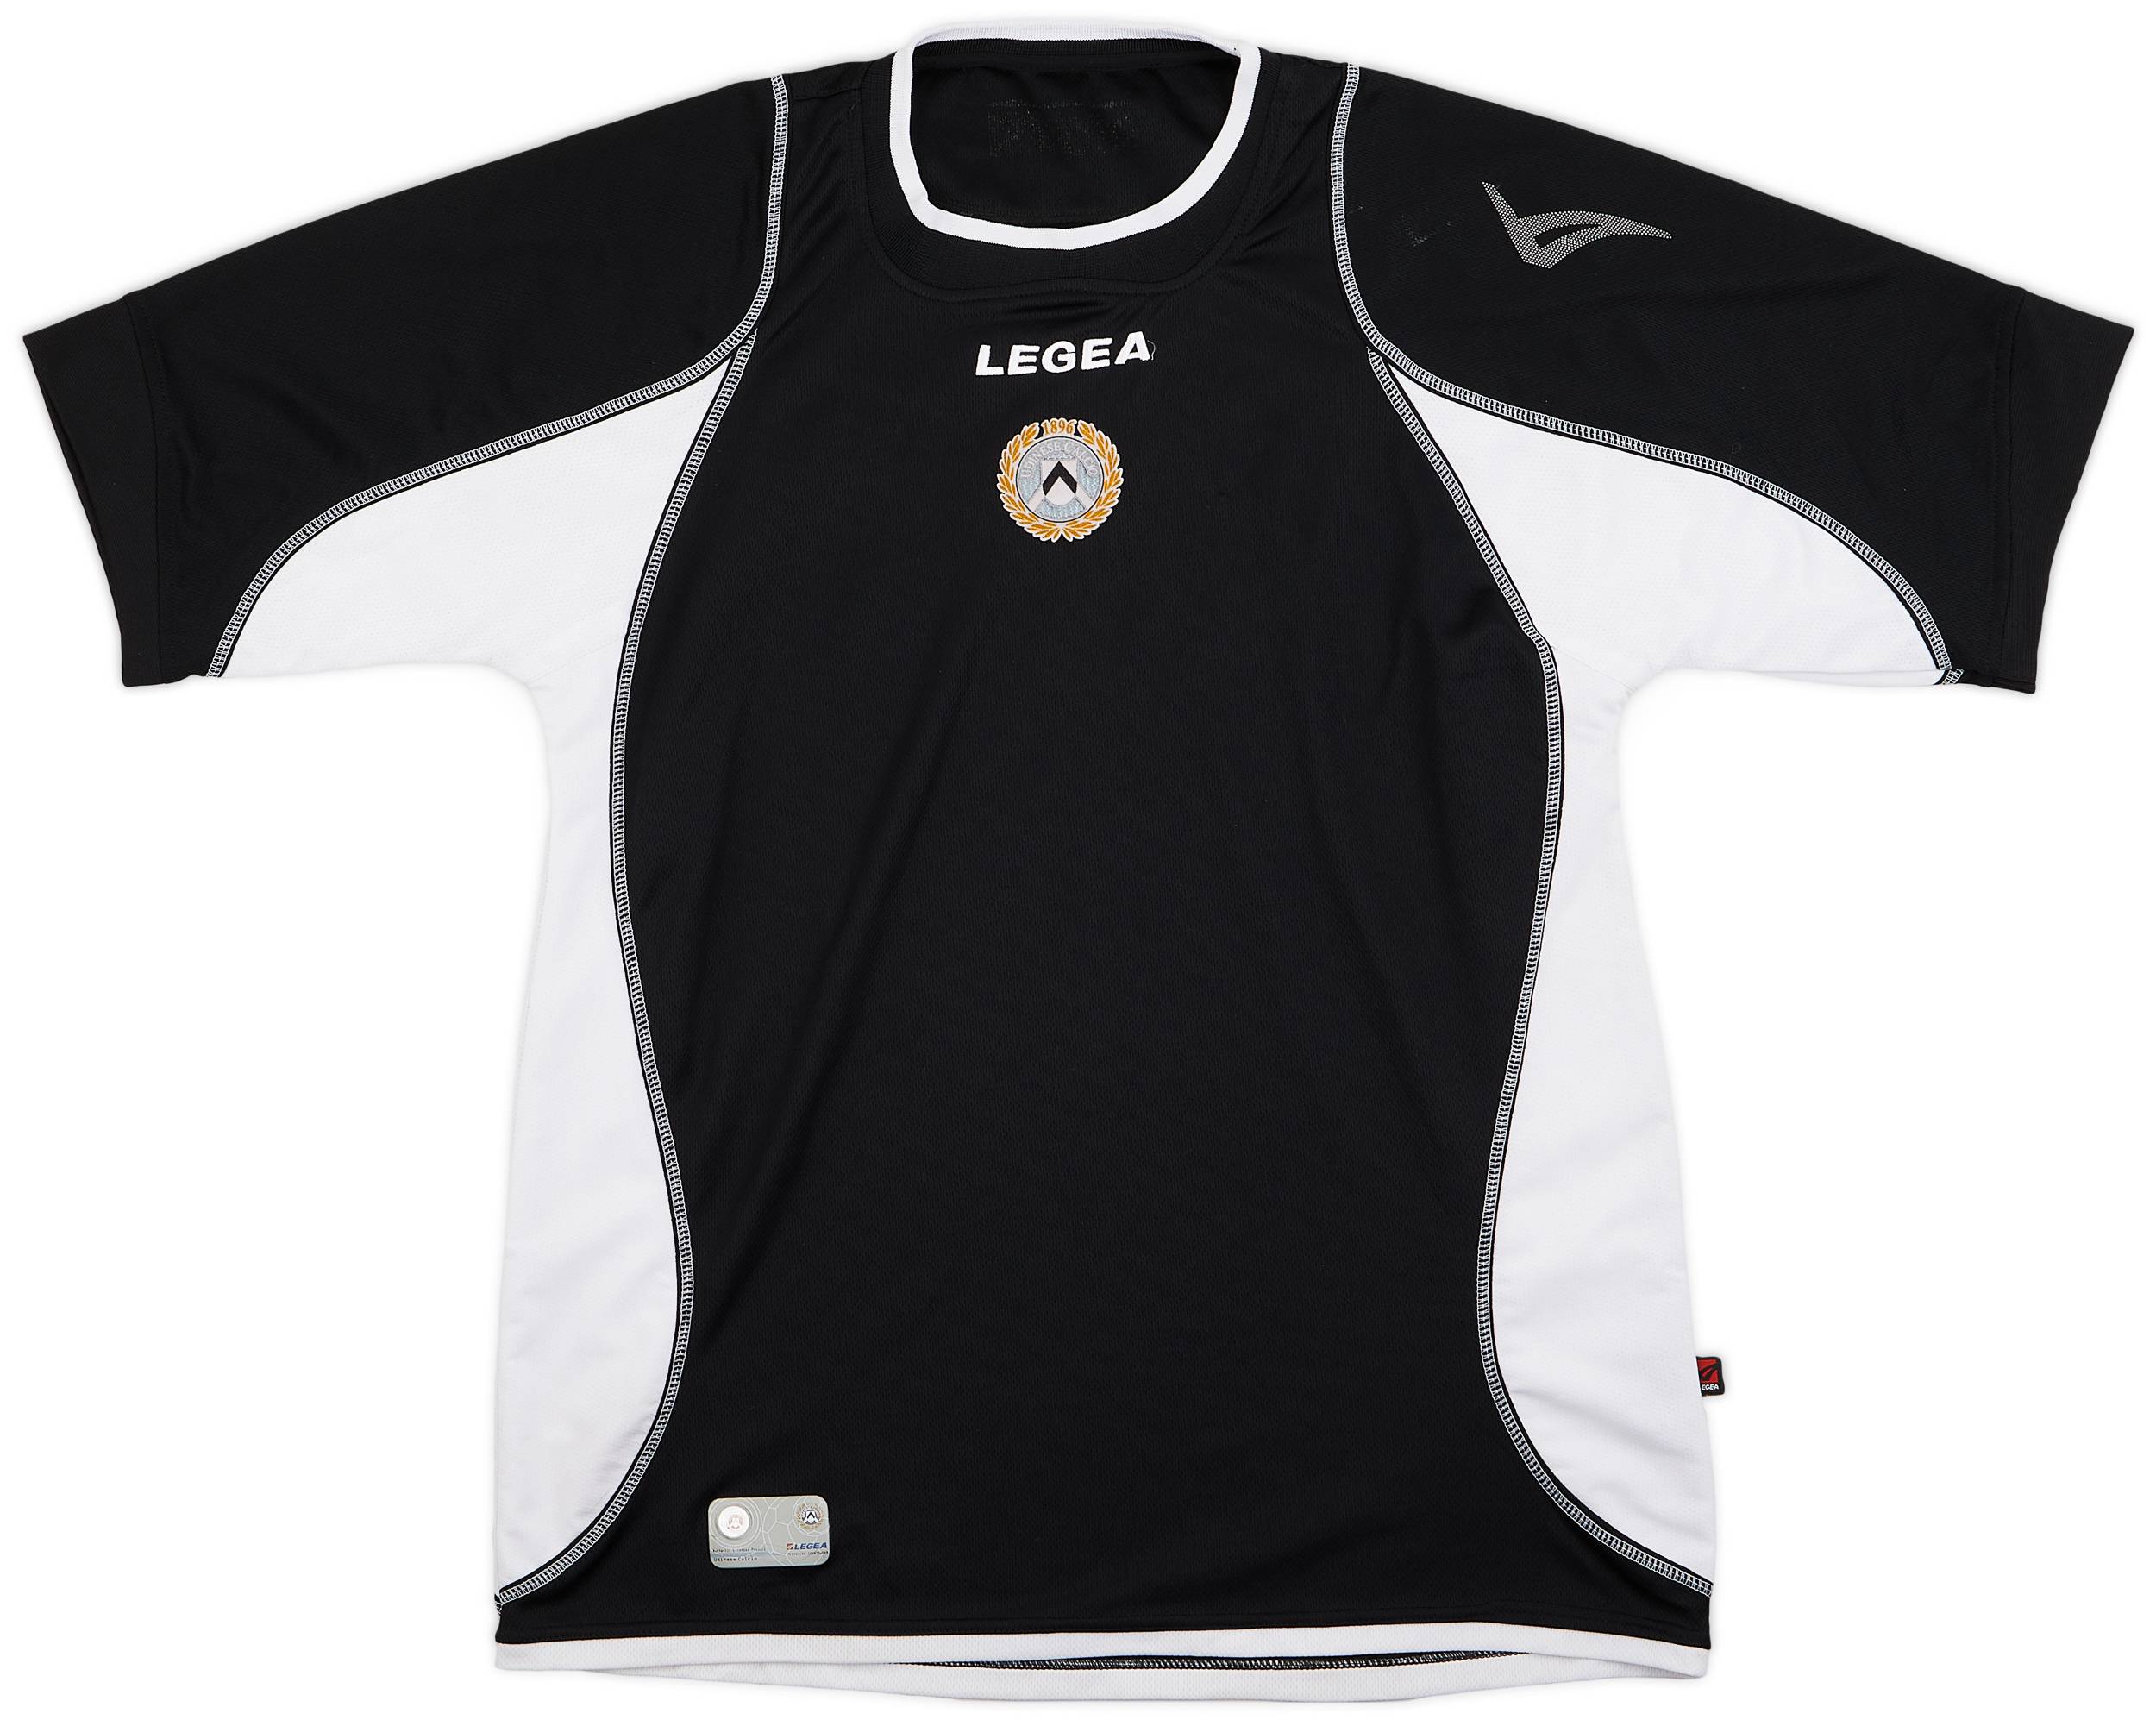 2011-12 Udinese Legea Training Shirt - 7/10 - (XL)